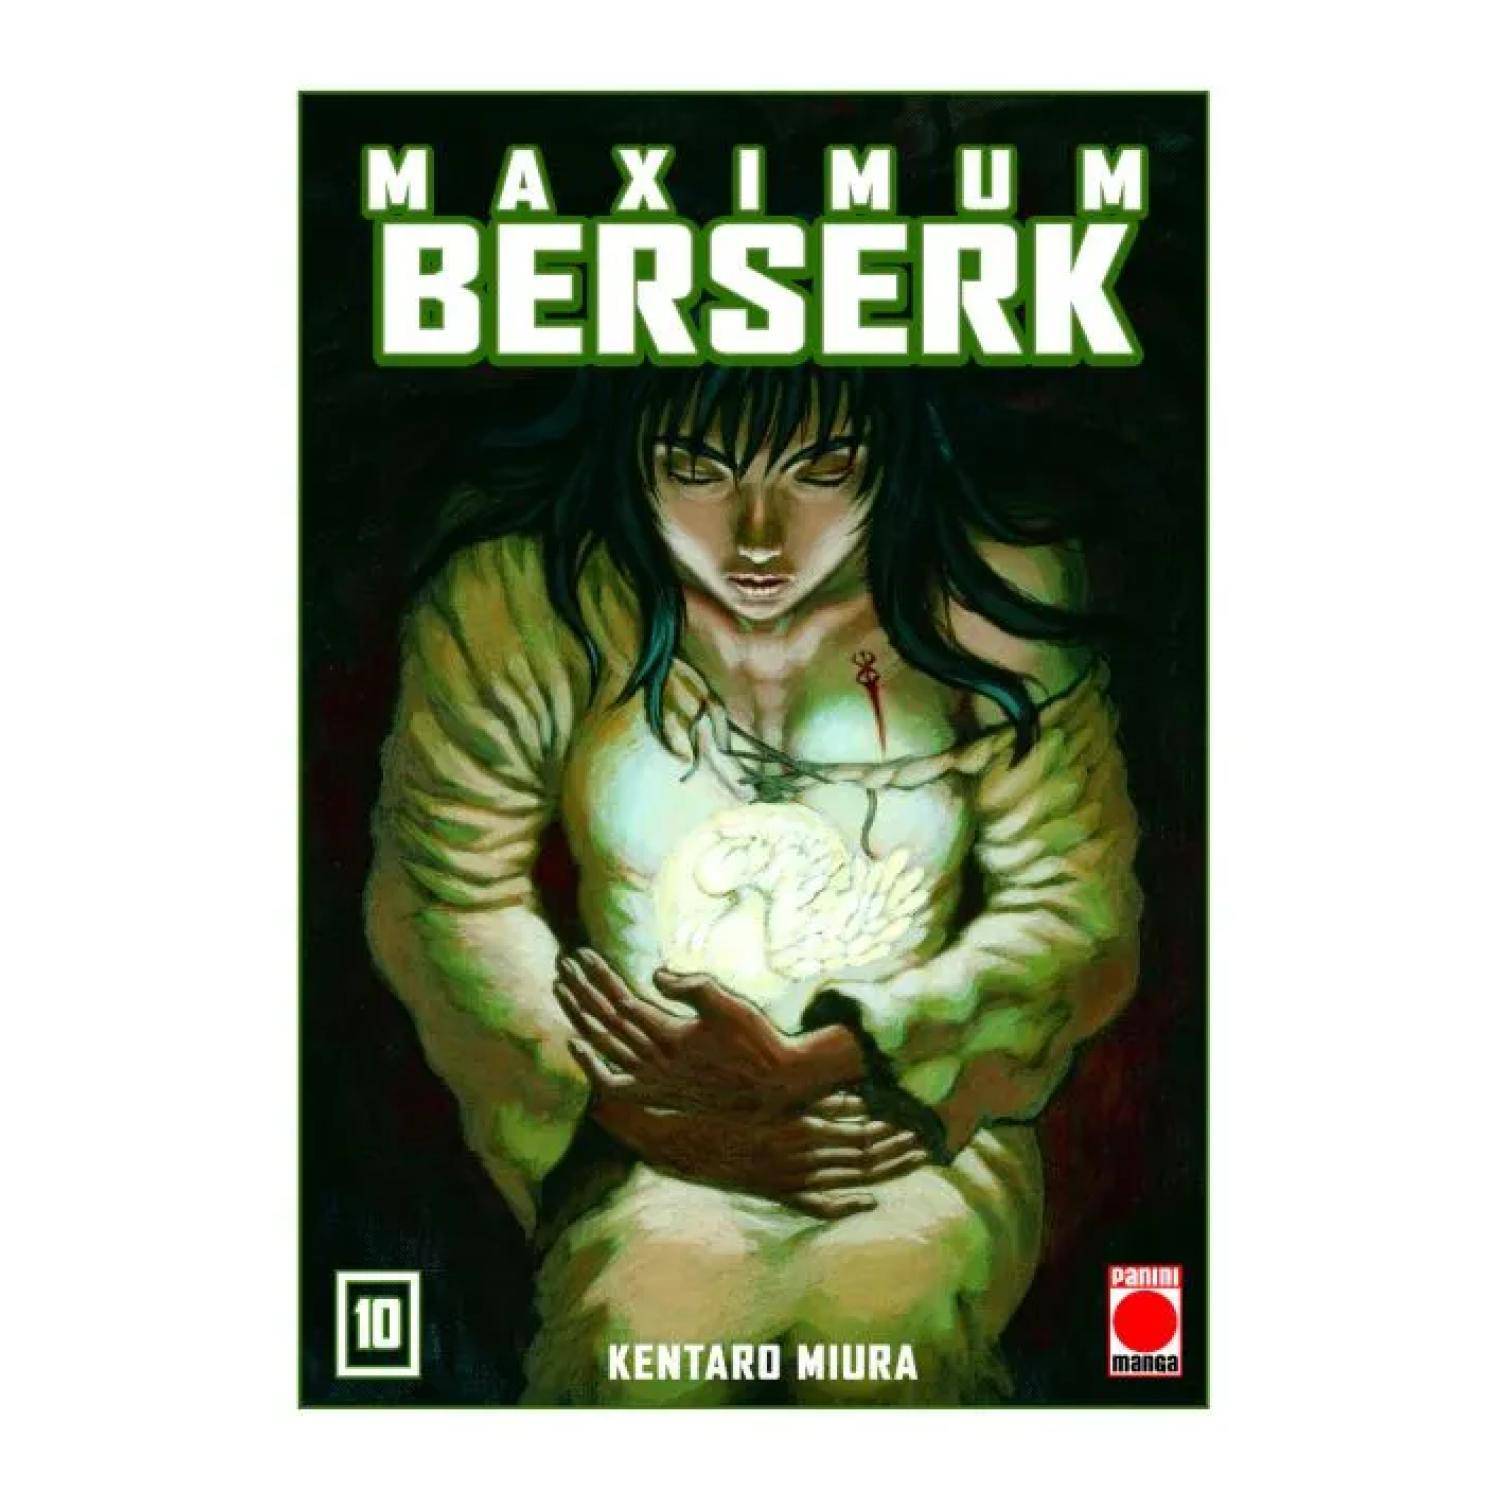 Maximum Berserk #21 (Panini Comics España)